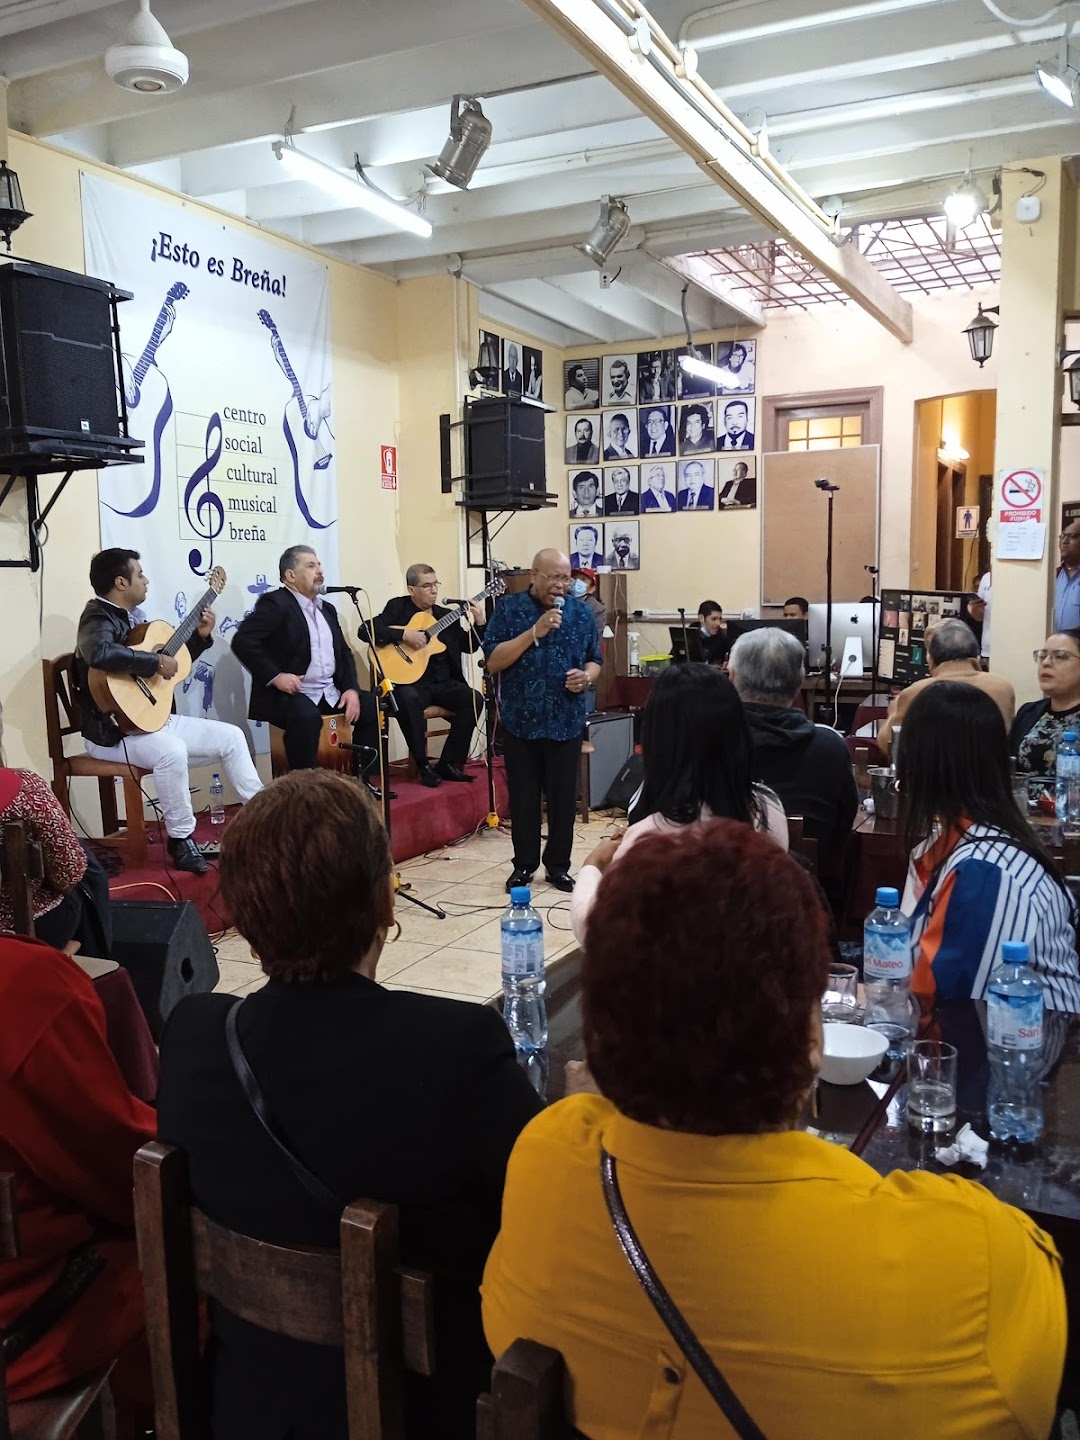 Centro Social Cultural Musical Breña